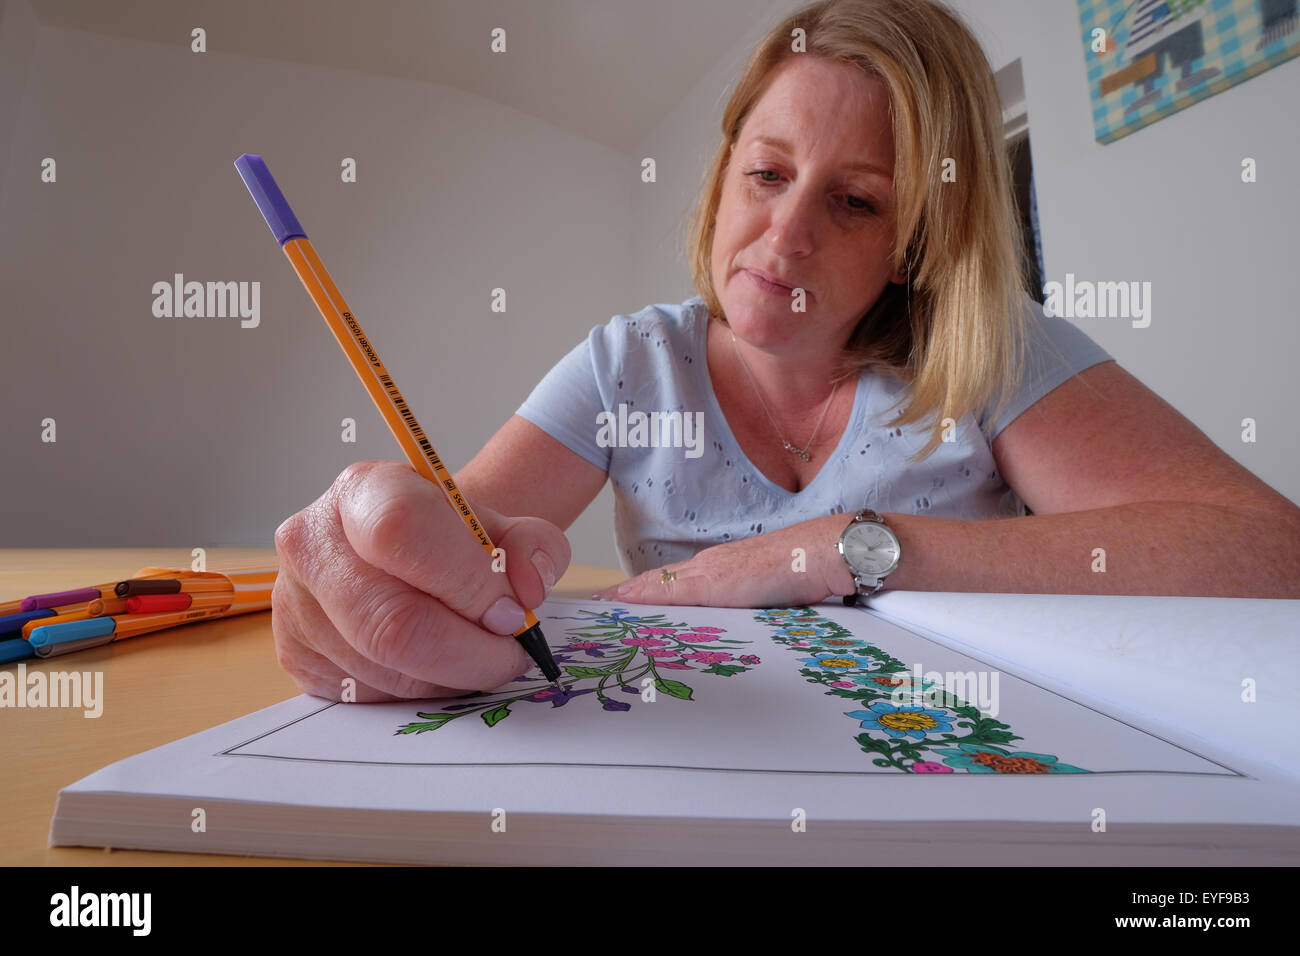 Una mujer adulta colorear un libro de colorear diseño vintage, una nueva tendencia en la relajación para adultos Foto de stock